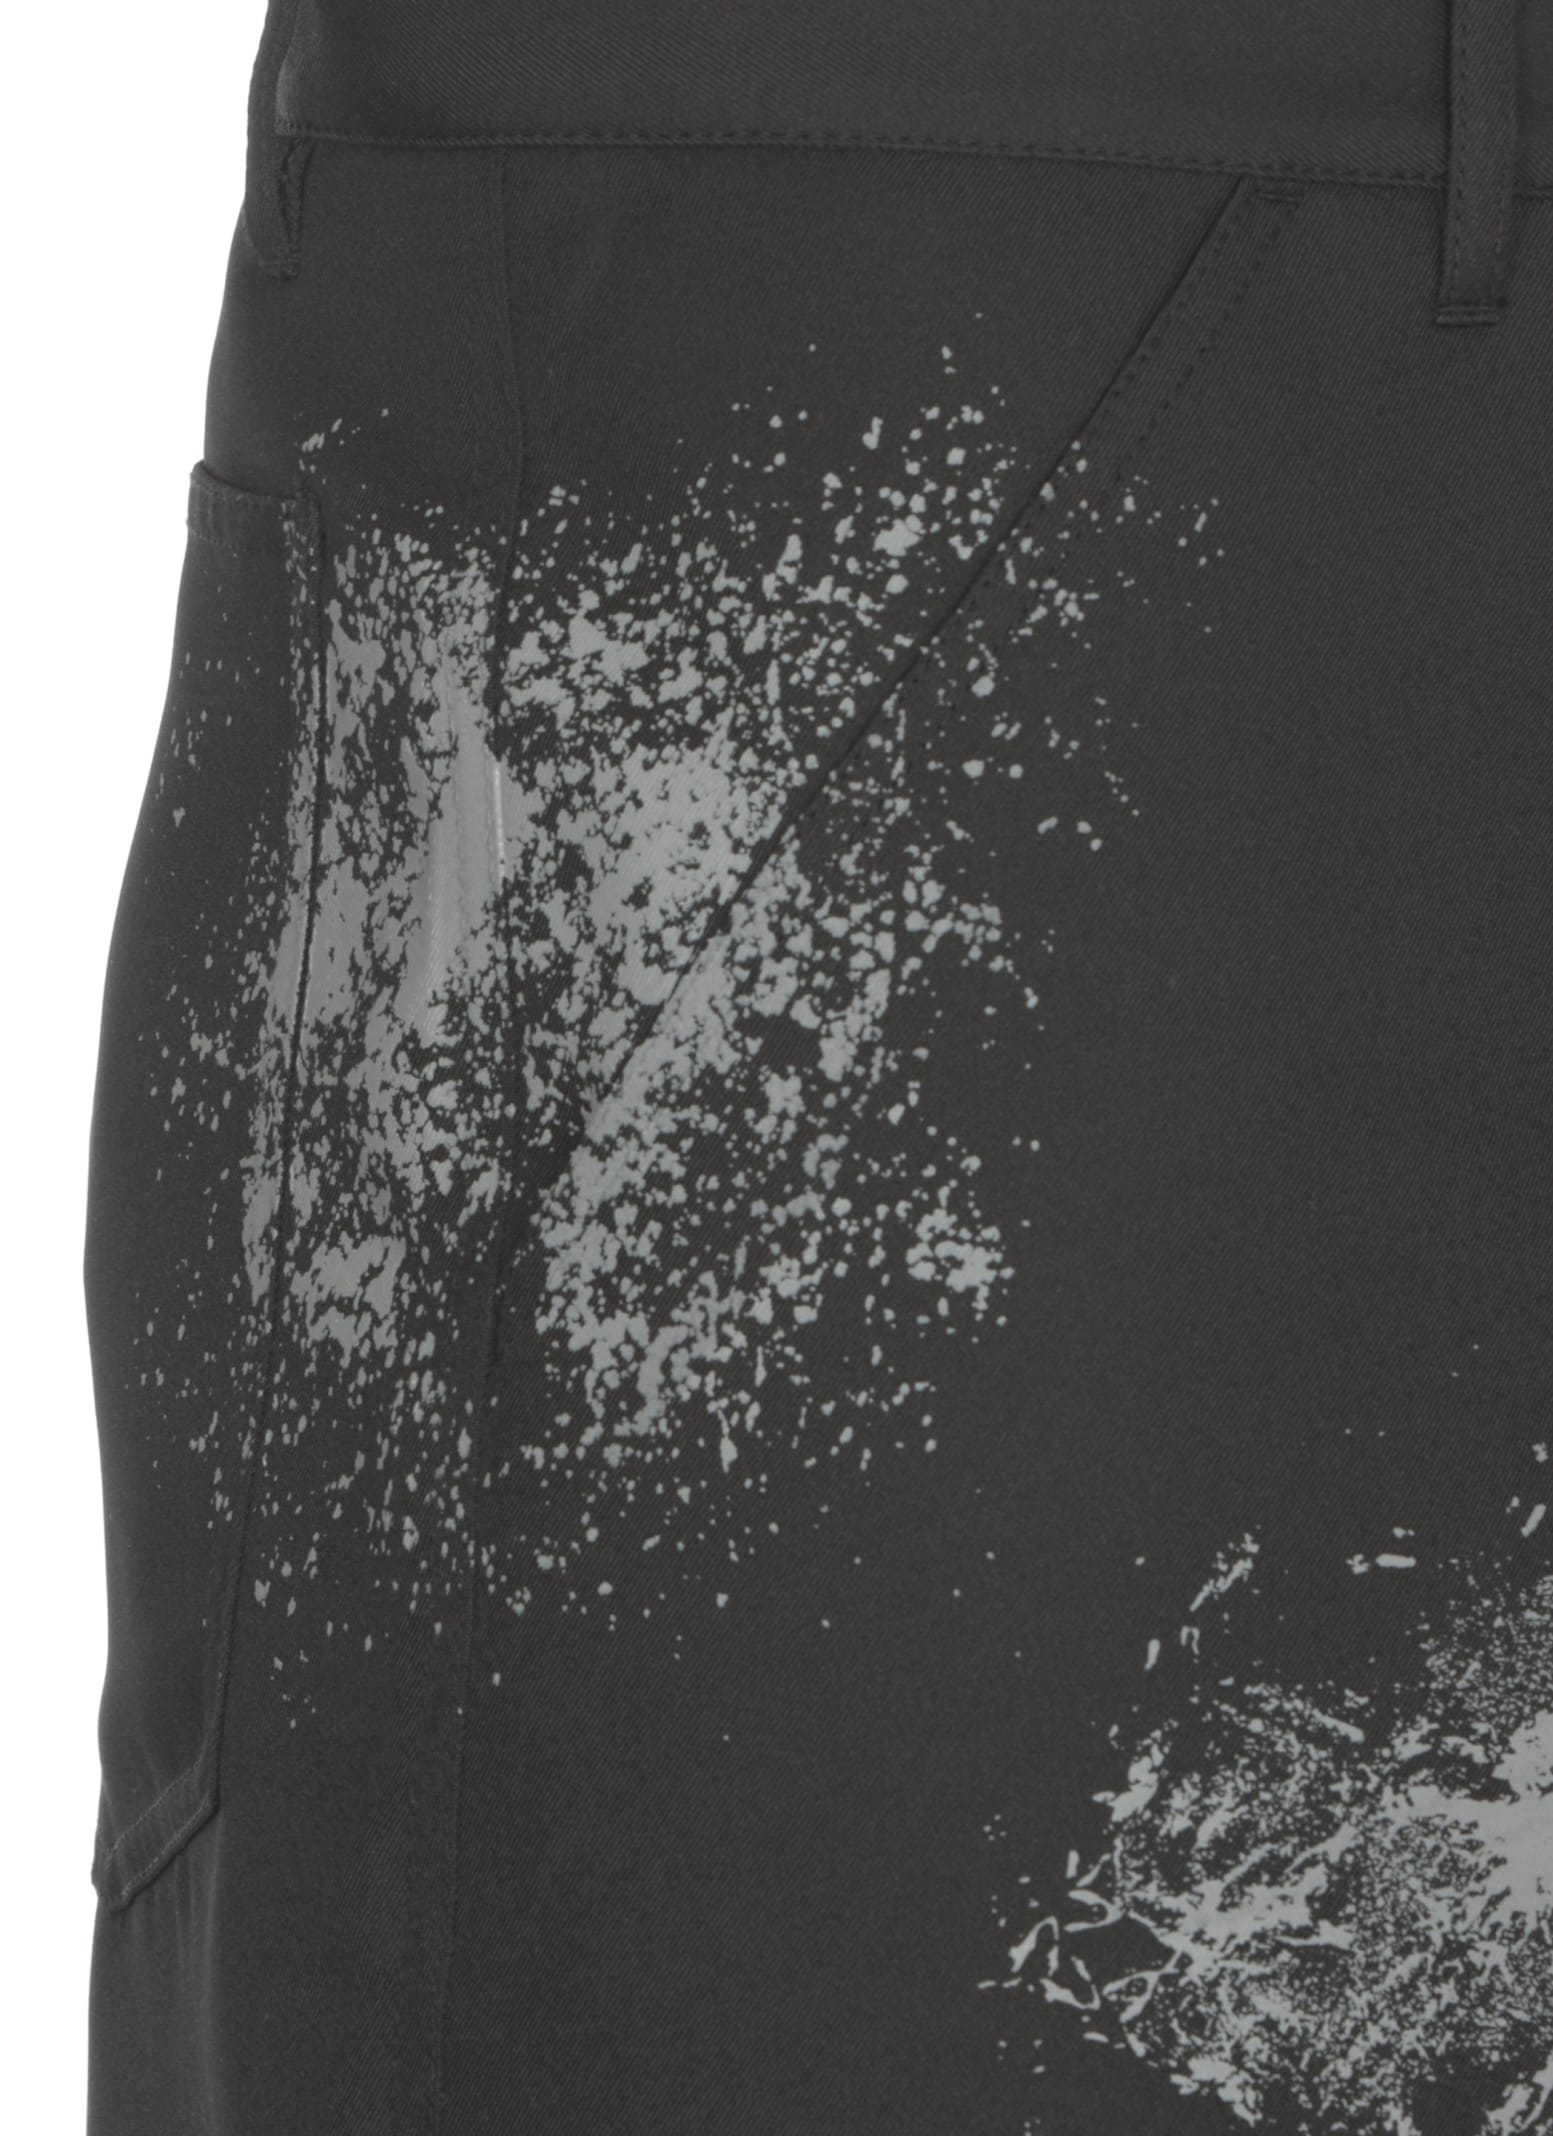 Shop Comme Des Garçons Shorts With Print In Black